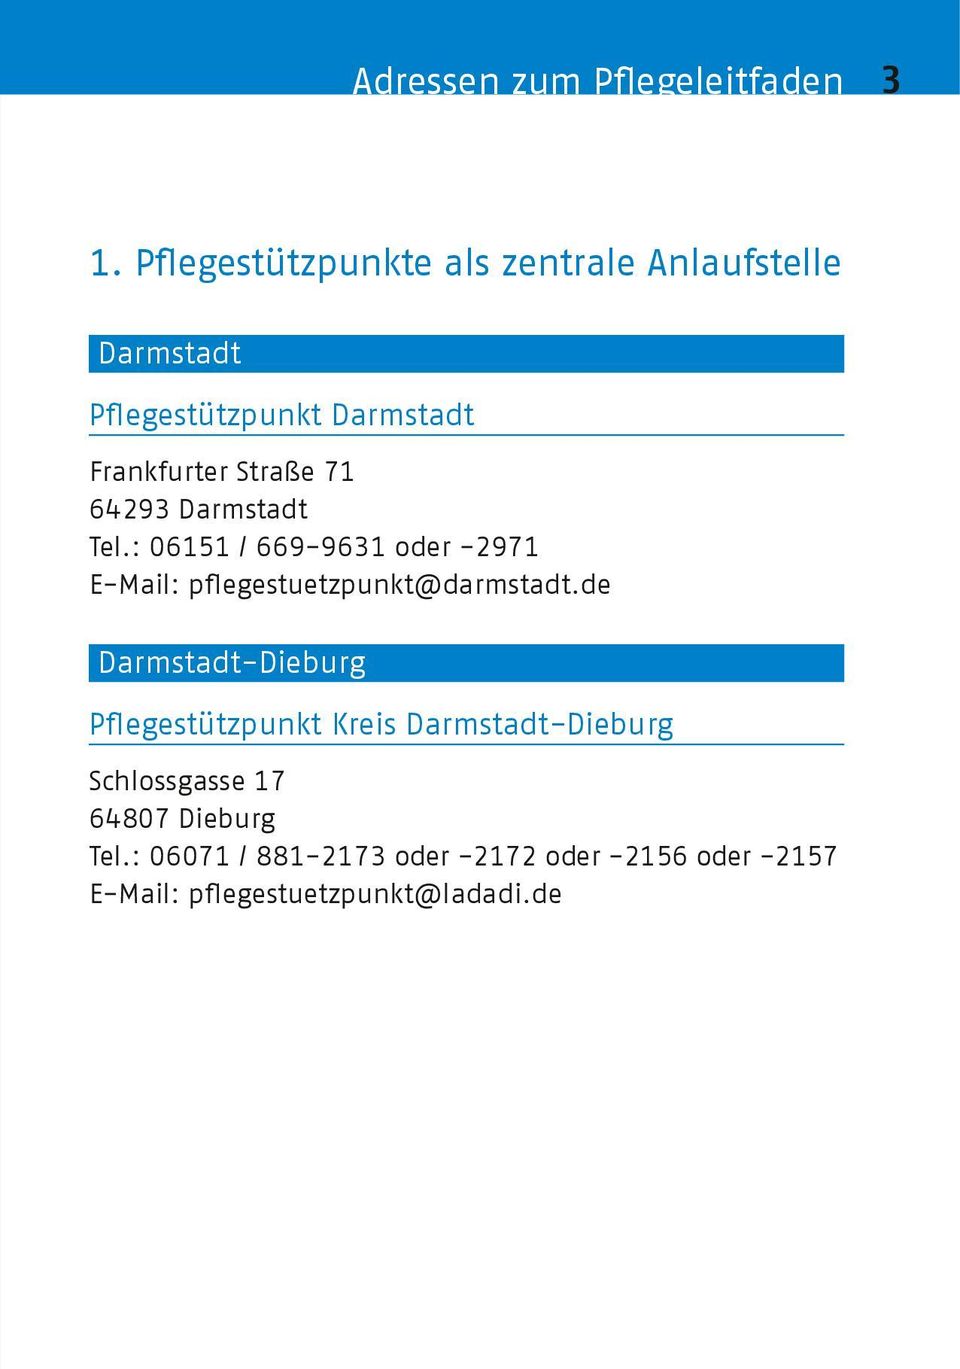 71 64293 Darmstadt Tel.: 06151 / 669-9631 oder -2971 E-Mail: pflegestuetzpunkt@darmstadt.